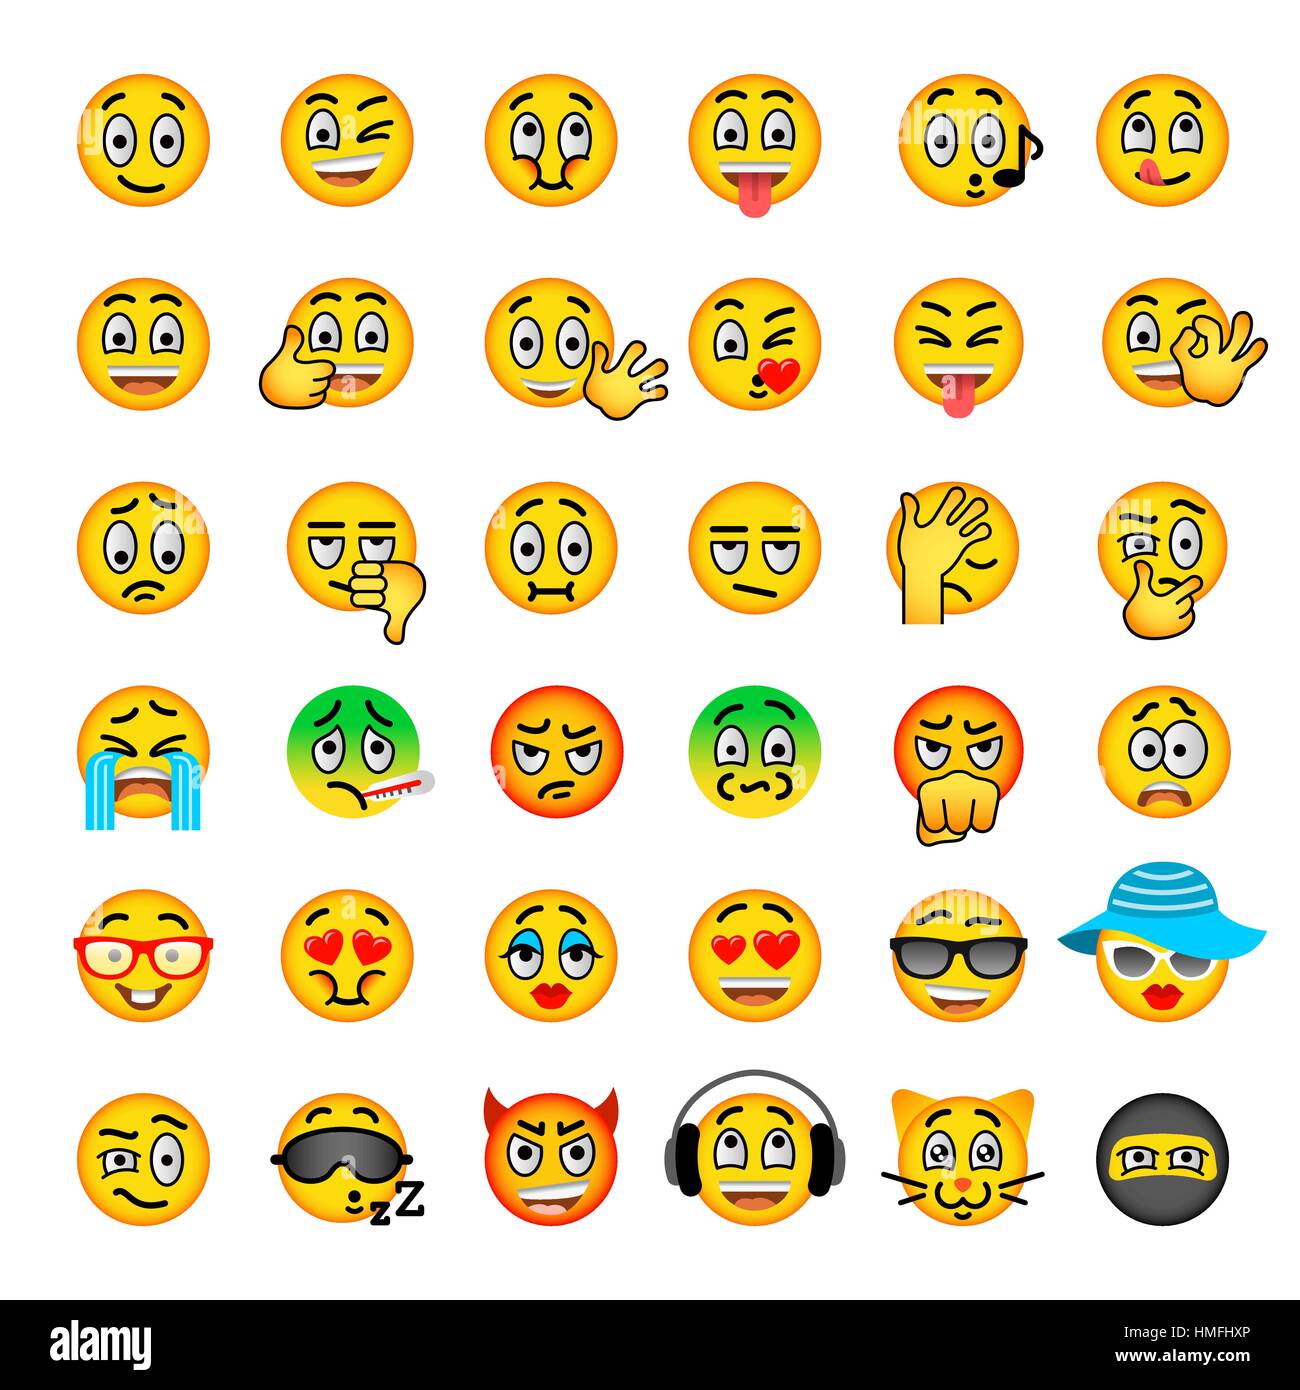 Smiley face télévision vector icons set. Émoticônes Emoji. Et l'expression d'émotions faciales différents symboles. Cute cartoon illustrations d'humeur et de réaction Illustration de Vecteur